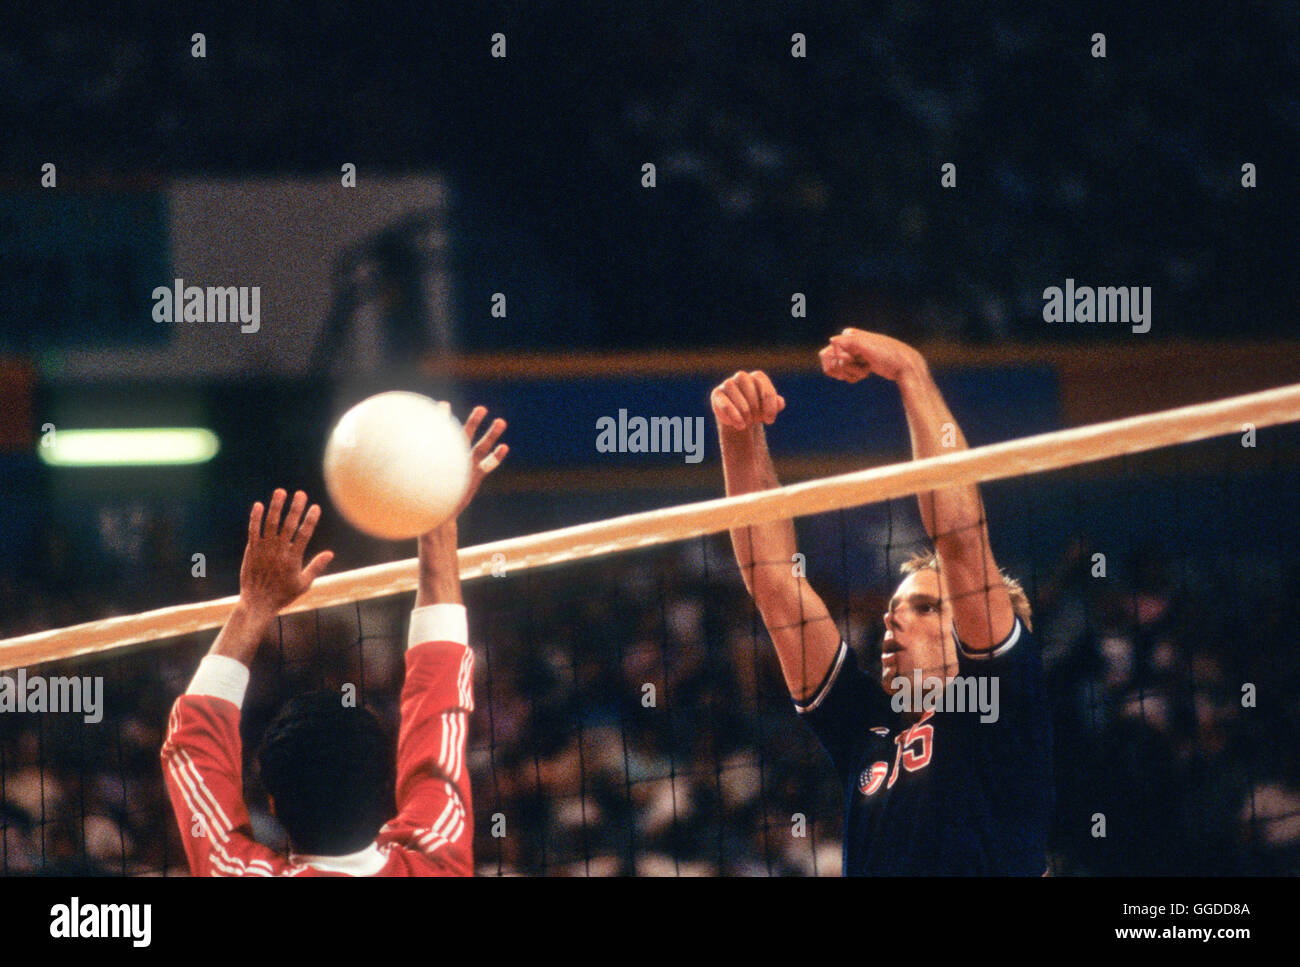 USA # 15 Karch Kiraly en action au cours de match à Long Beach Arena, les hommes de l'équipe de volley-ball aux Jeux Olympiques de 1984 Banque D'Images